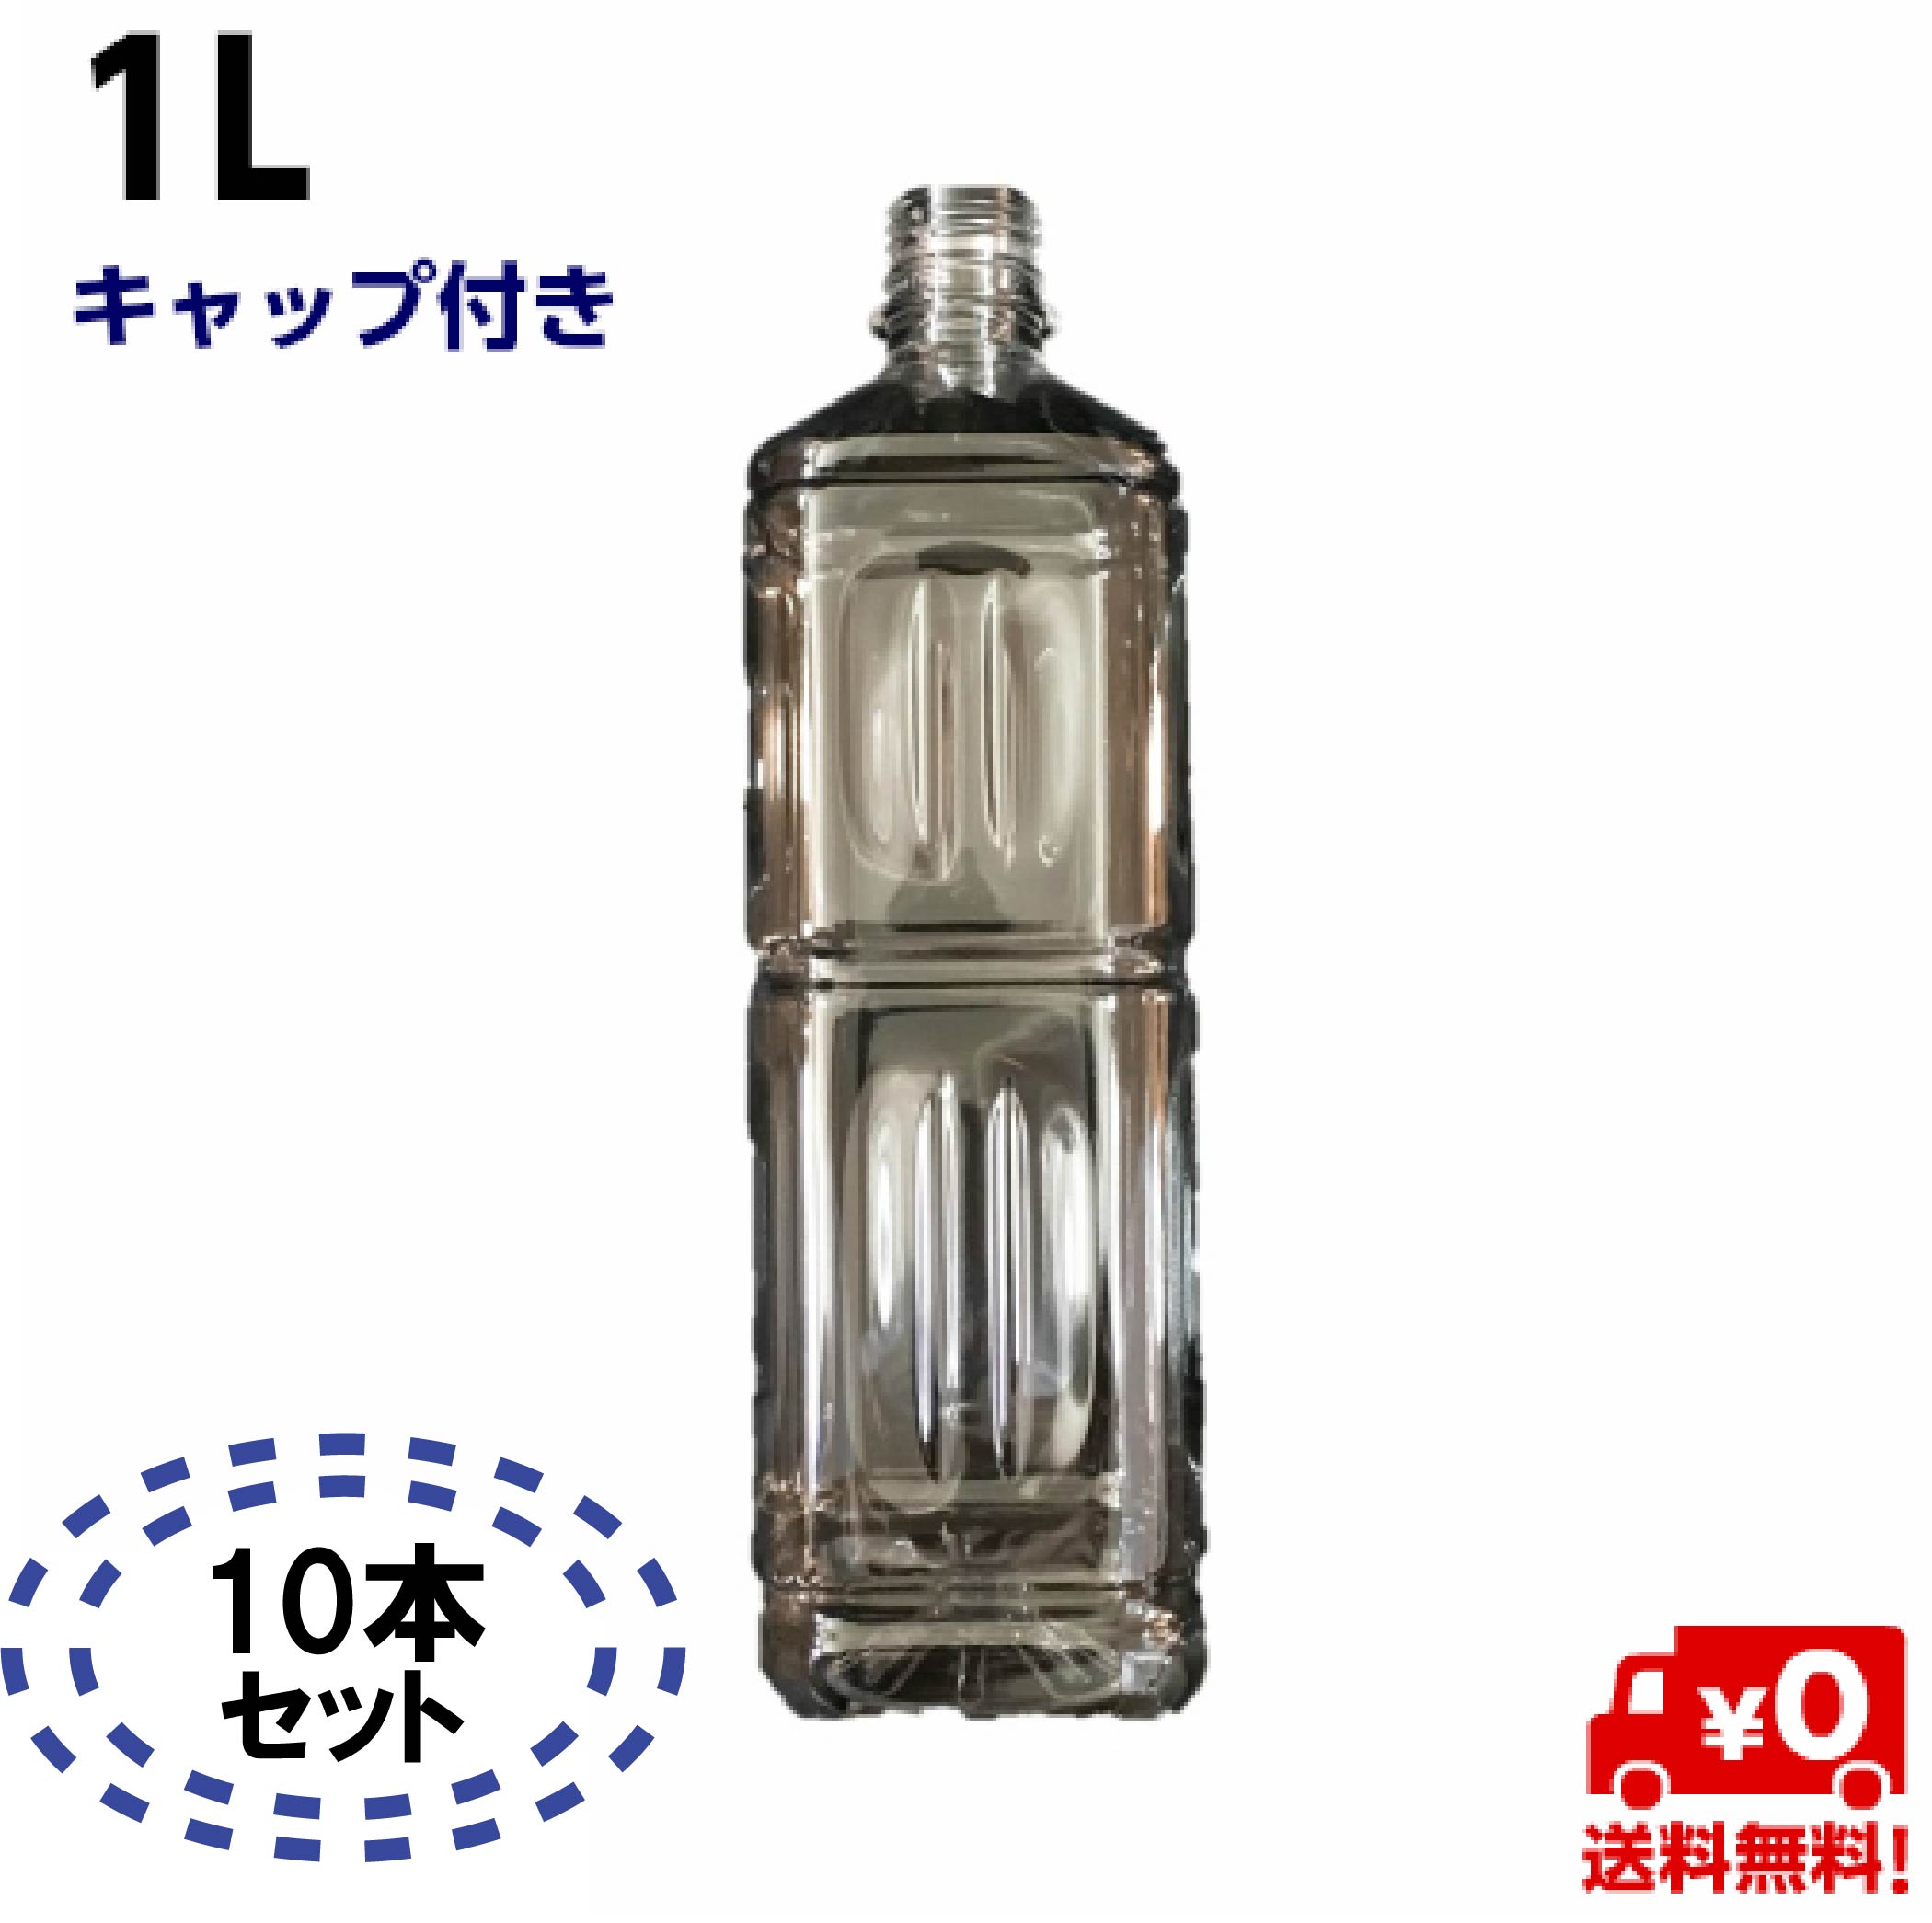 【楽天市場】ペットボトル容器 1L キャップ付き【5本入】透明 空